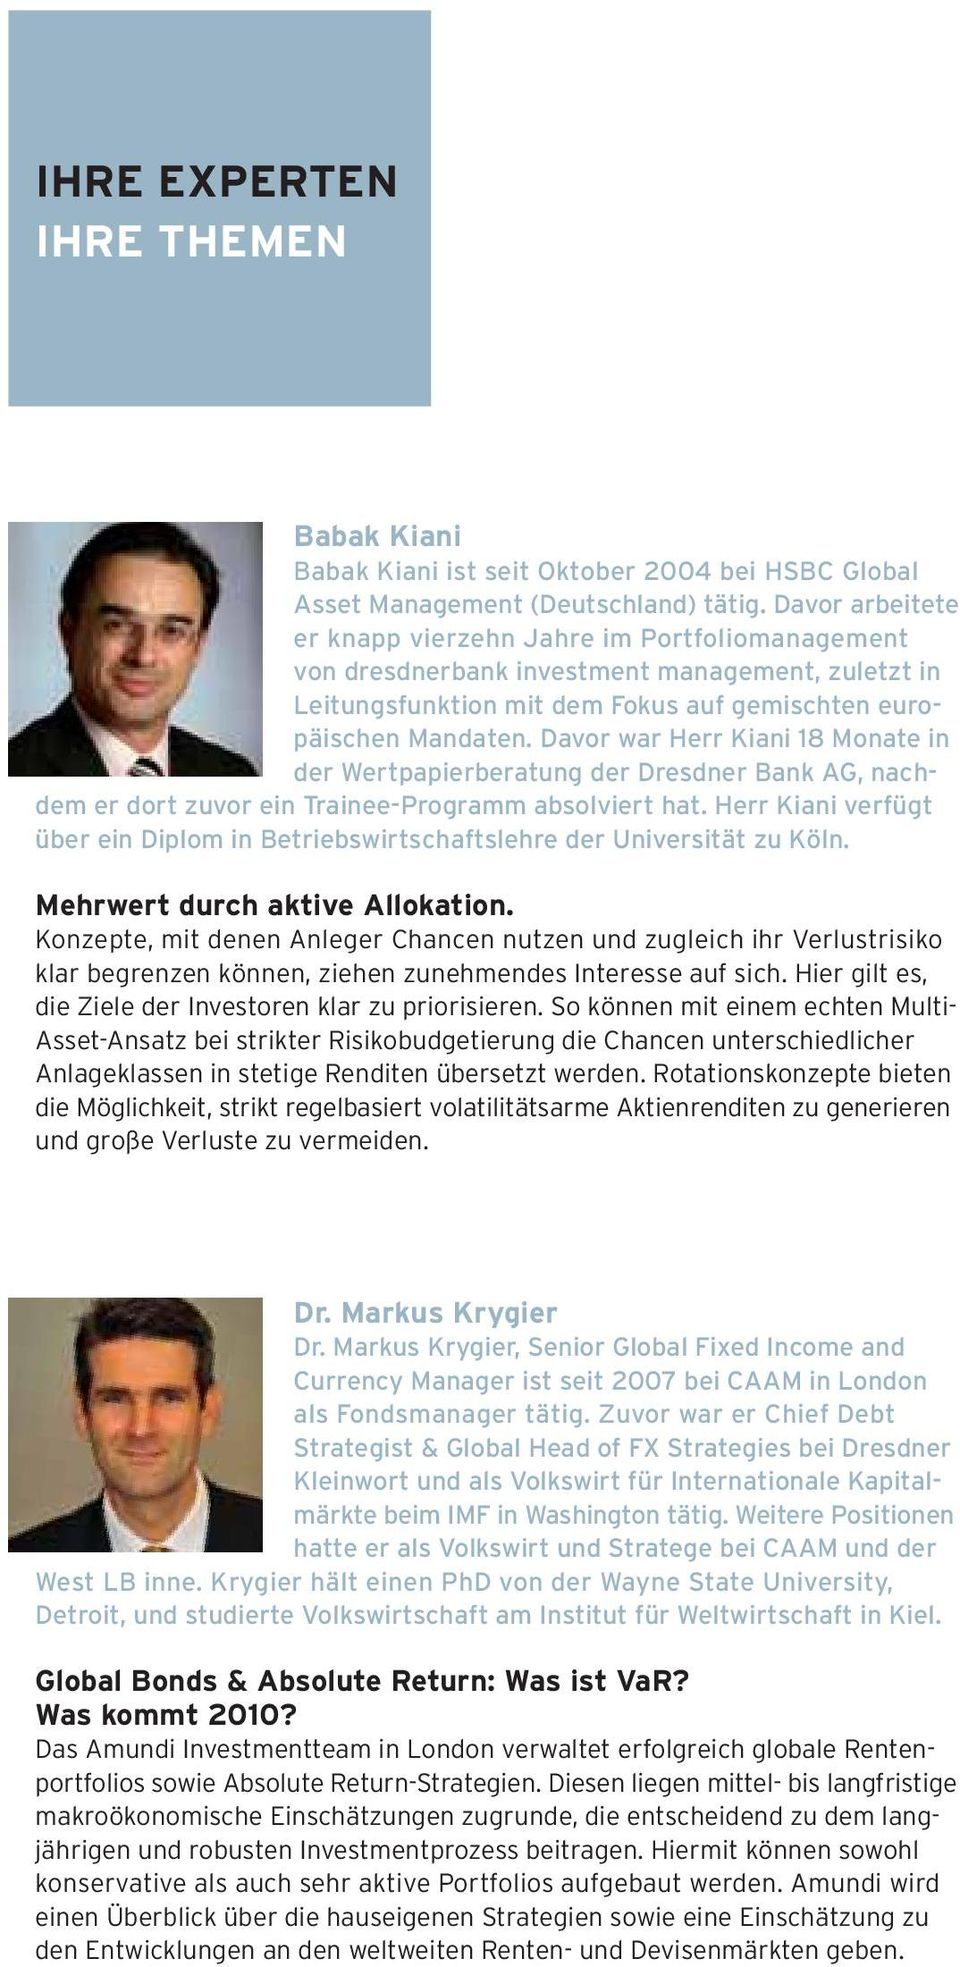 Davor war Herr Kiani 18 Monate in der Wertpapierberatung der Dresdner Bank AG, nachdem er dort zuvor ein Trainee-Programm absolviert hat.